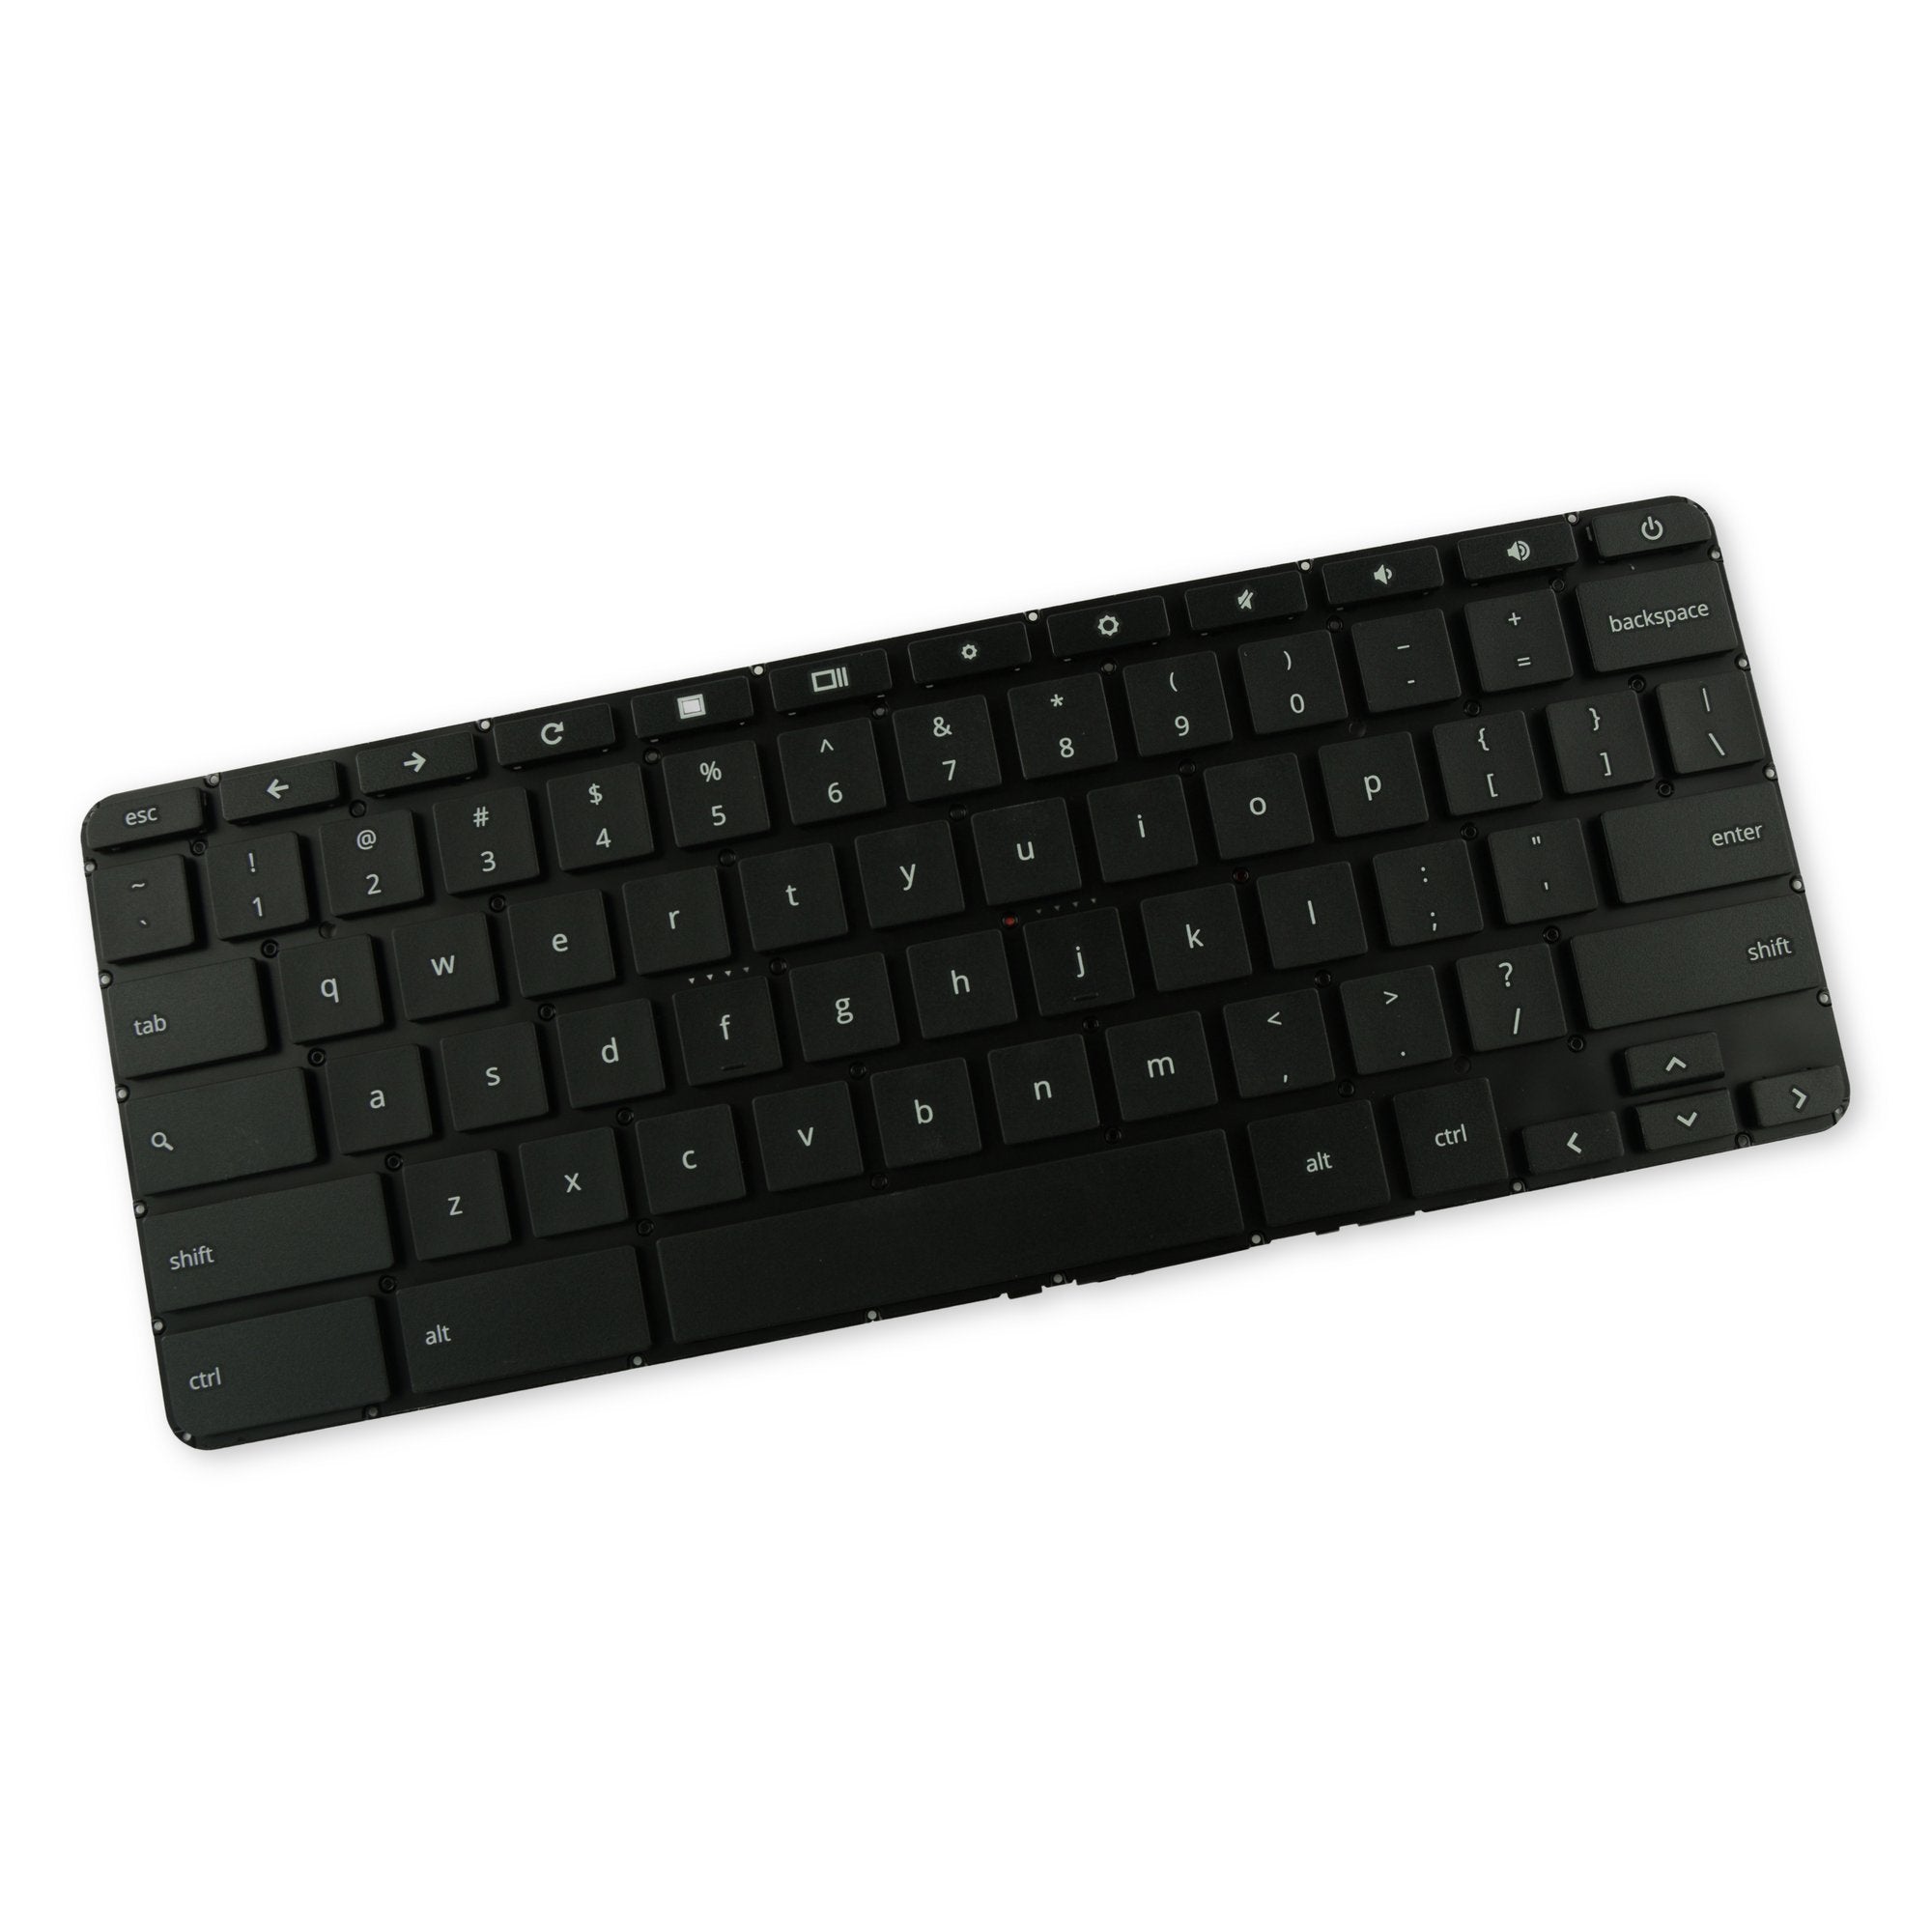 HP Chromebook 11 G3/G4 Keyboard